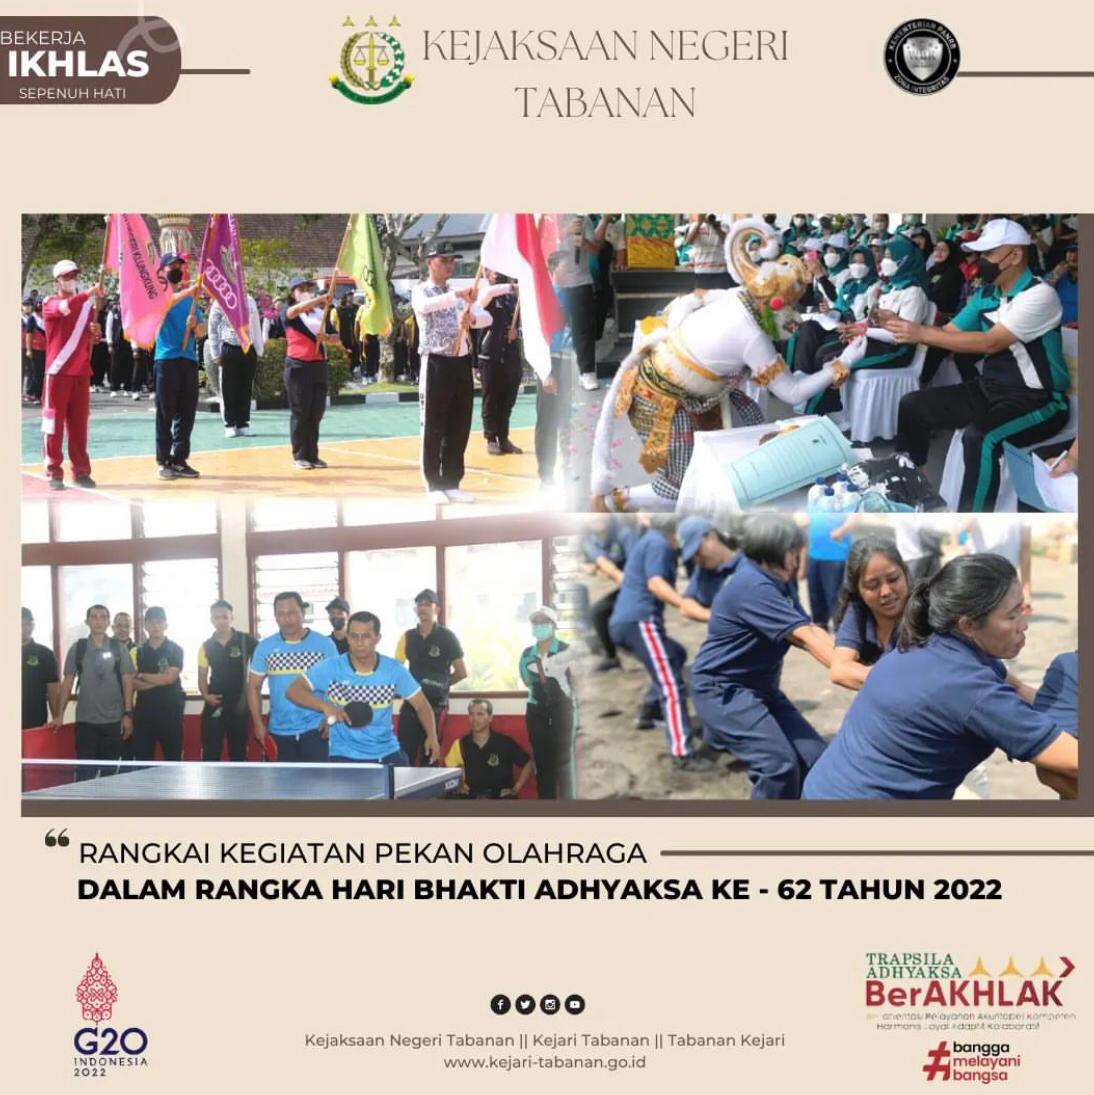 Upacara HUT Ke-73 Republik Indonesia Tahun 2018